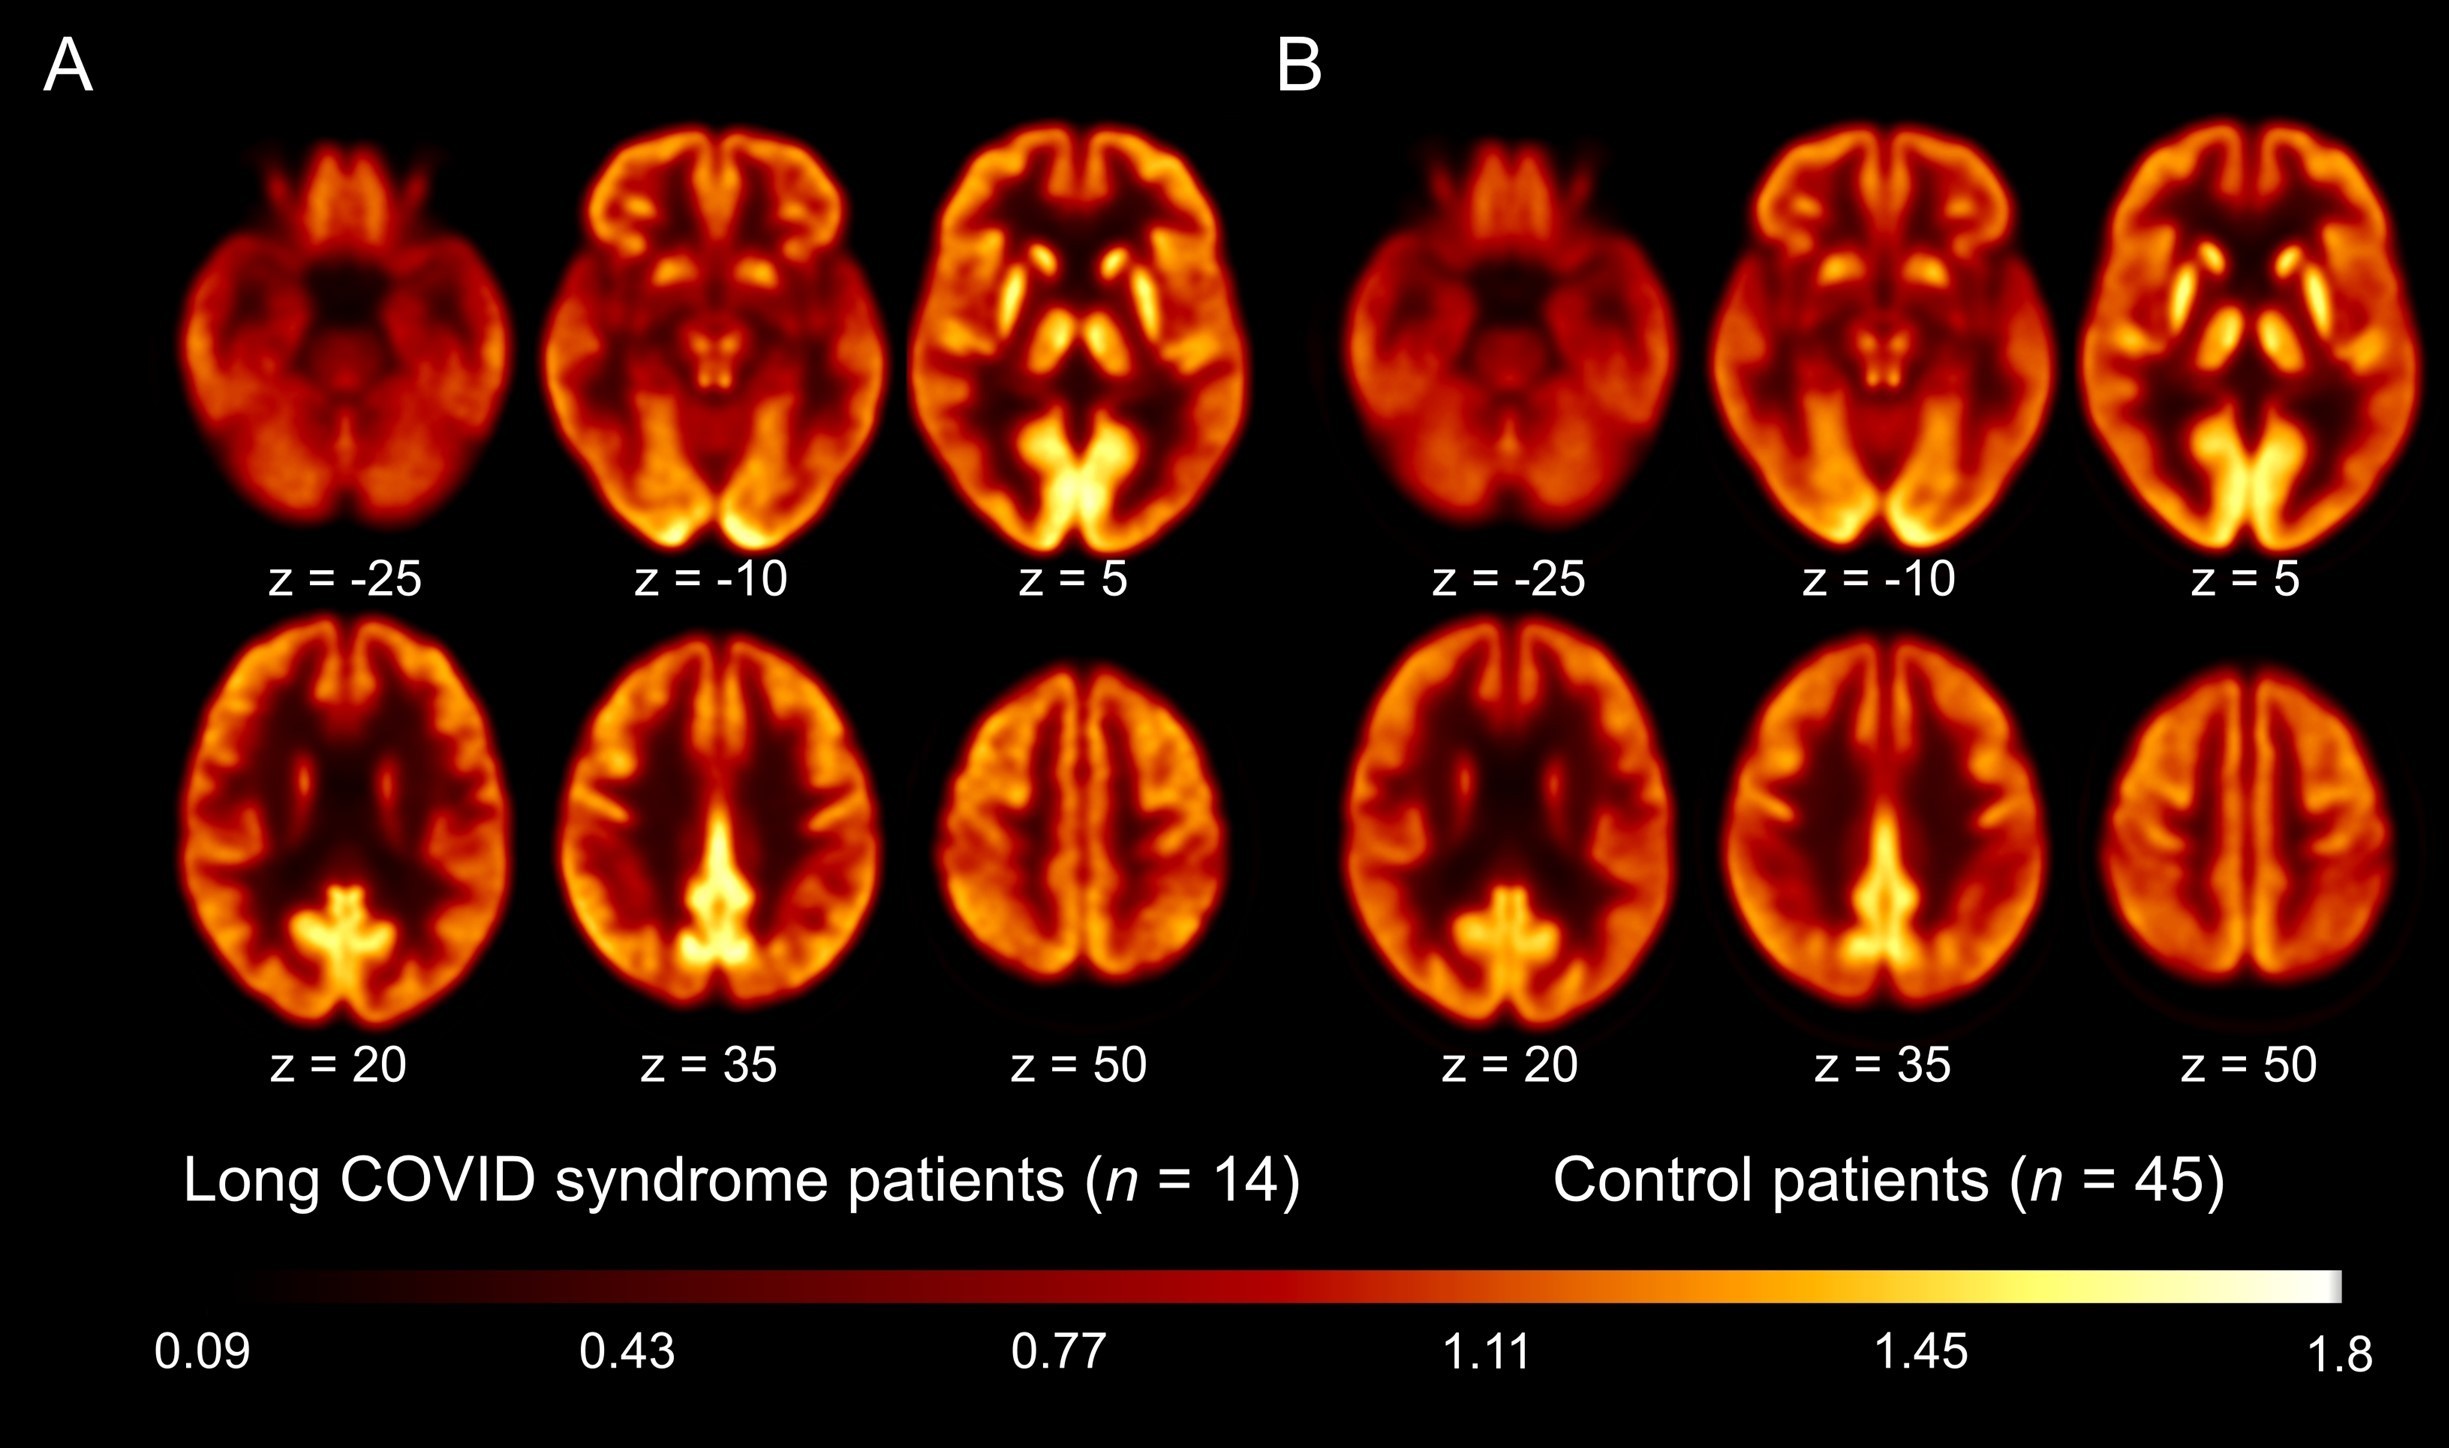 Covid longa seria consequência de fadiga, não de disfunção cerebral (Foto: Reprodução/The Journal of Nuclear Medicine)